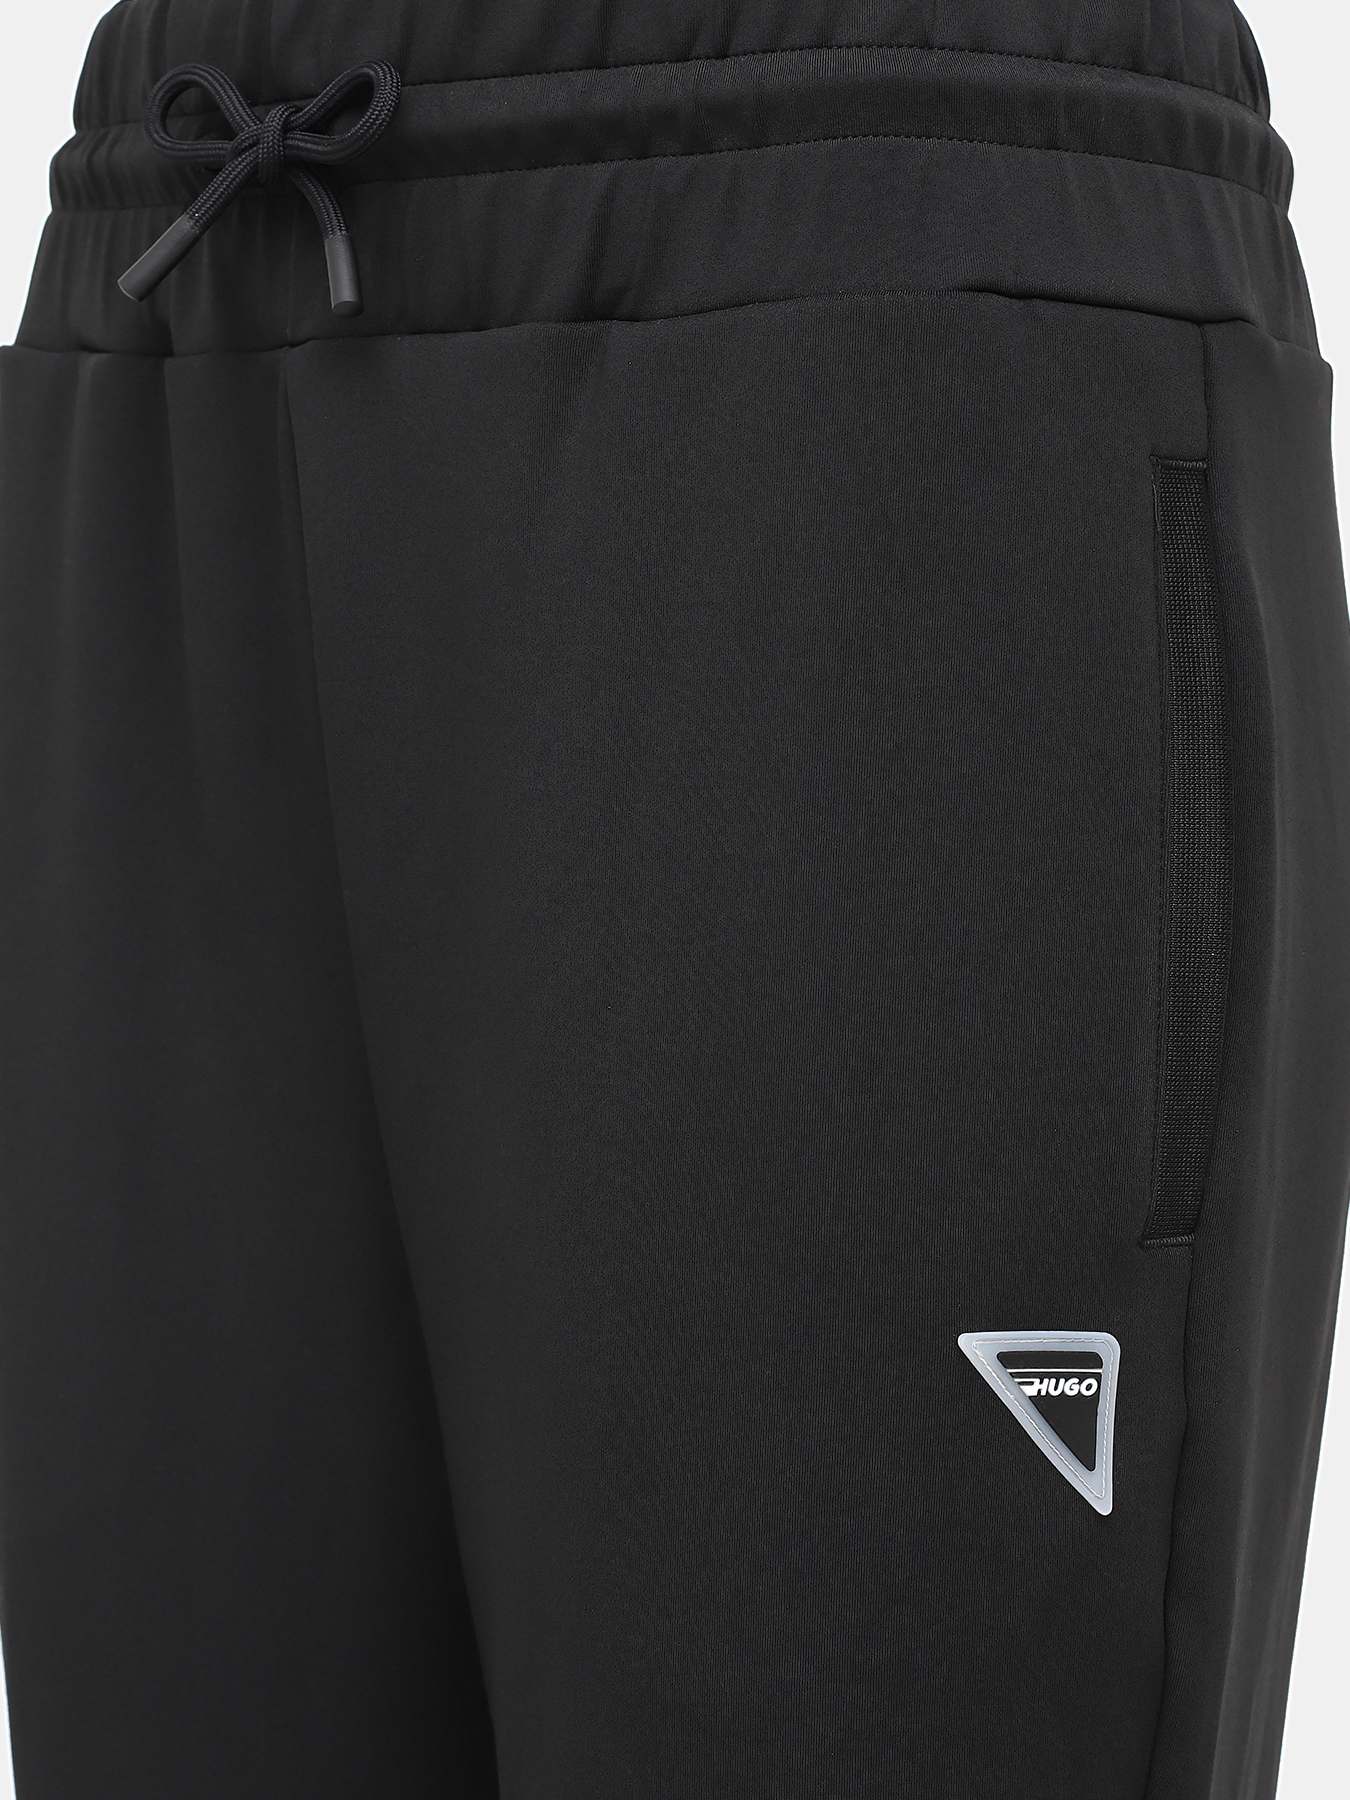 Спортивные брюки Narcy HUGO 420599-043, цвет черный, размер 44-46 - фото 3